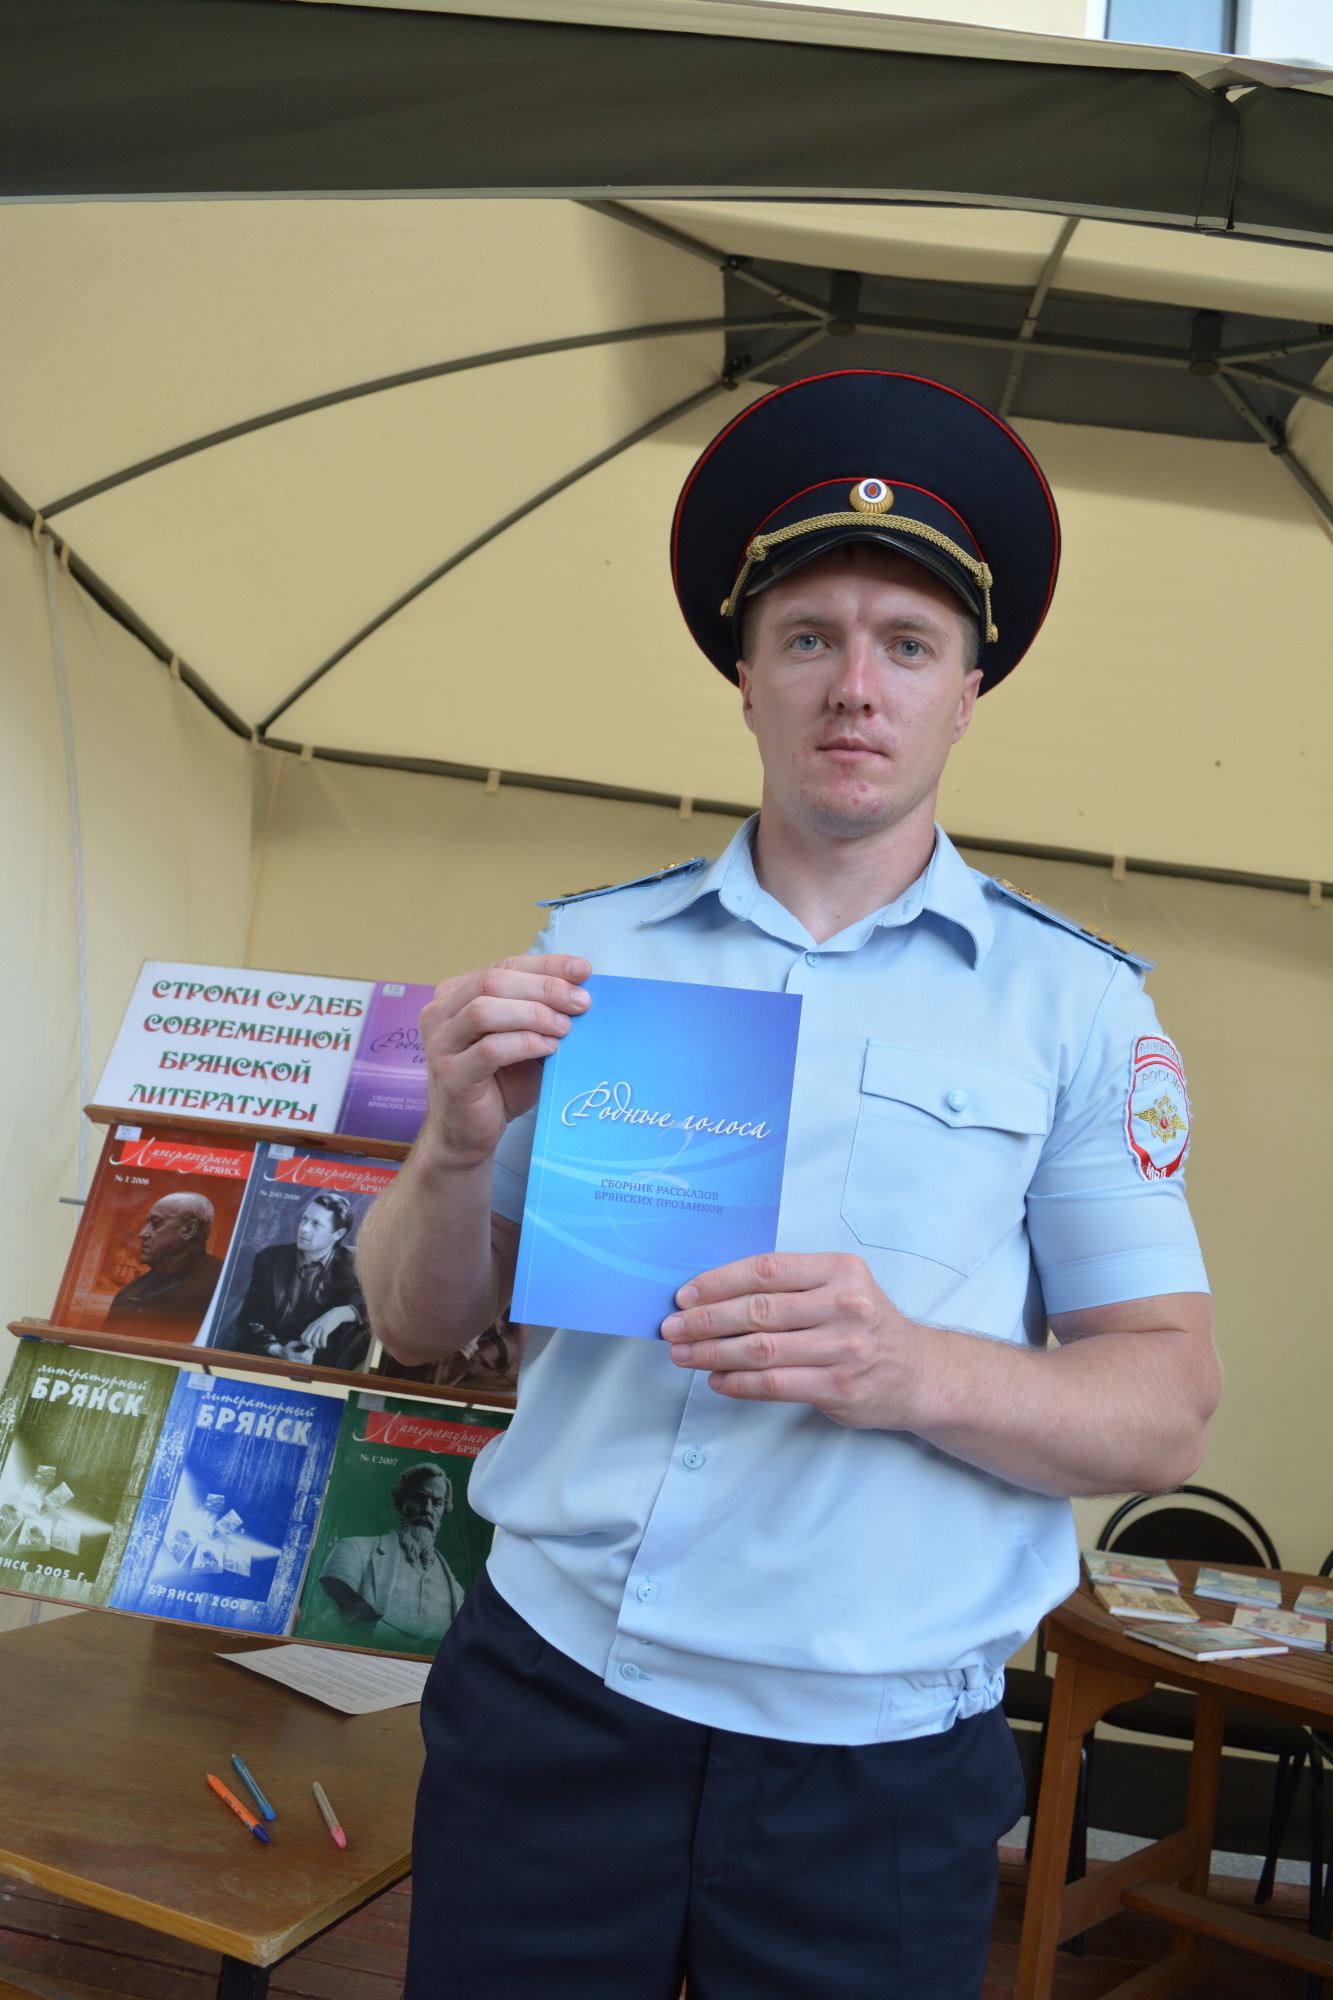 Сержант полиции из Брянска сочинил рассказы и попал в книжку